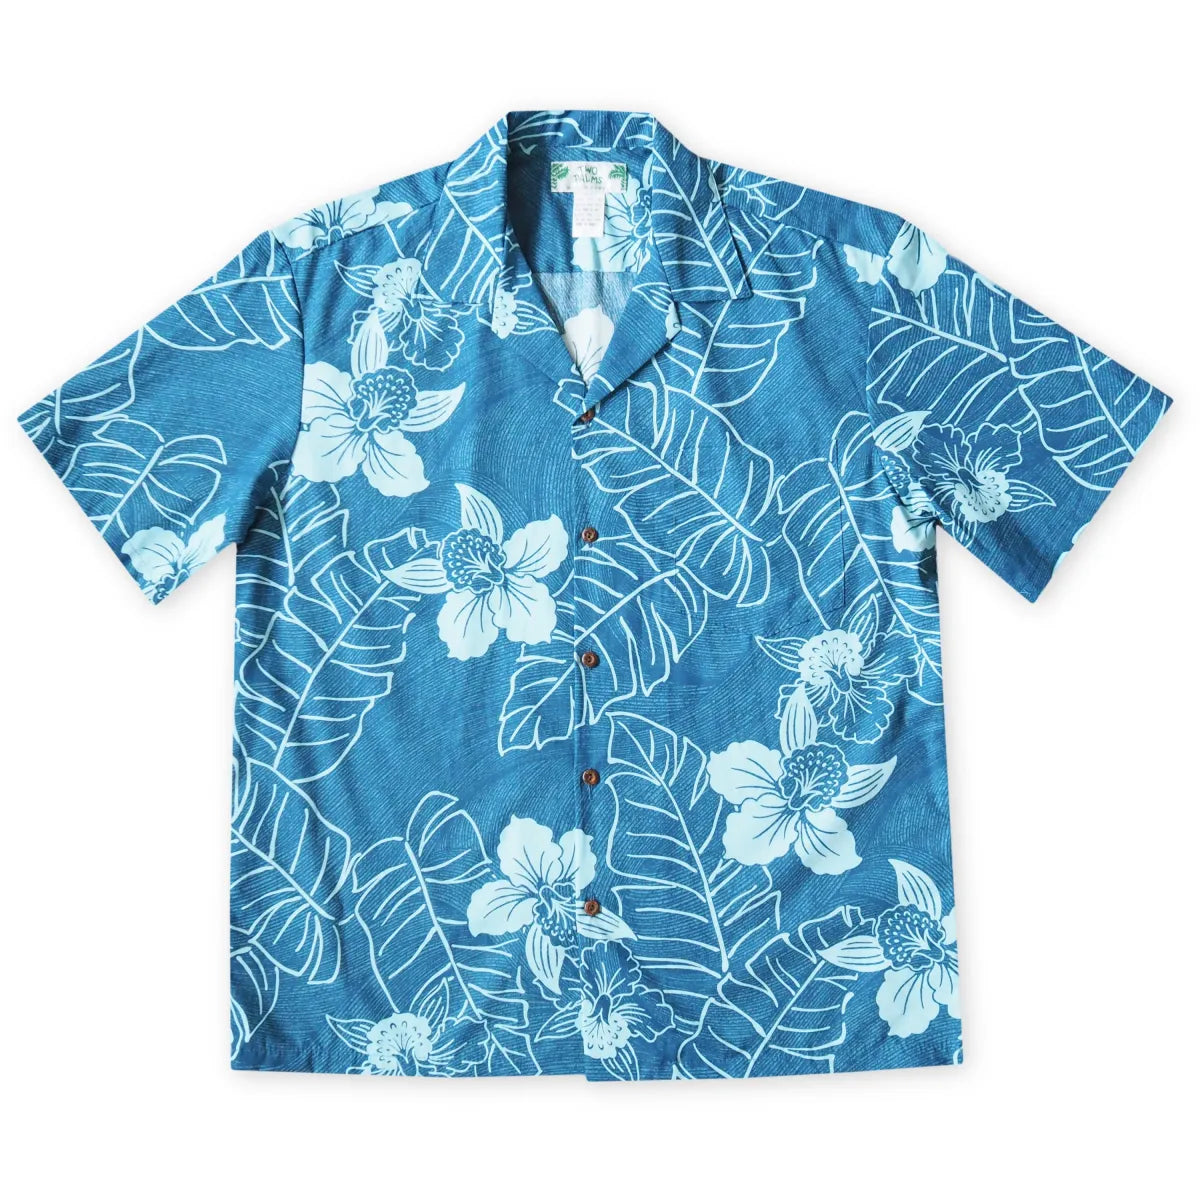 Ka’anapali aqua hawaiian cotton shirt